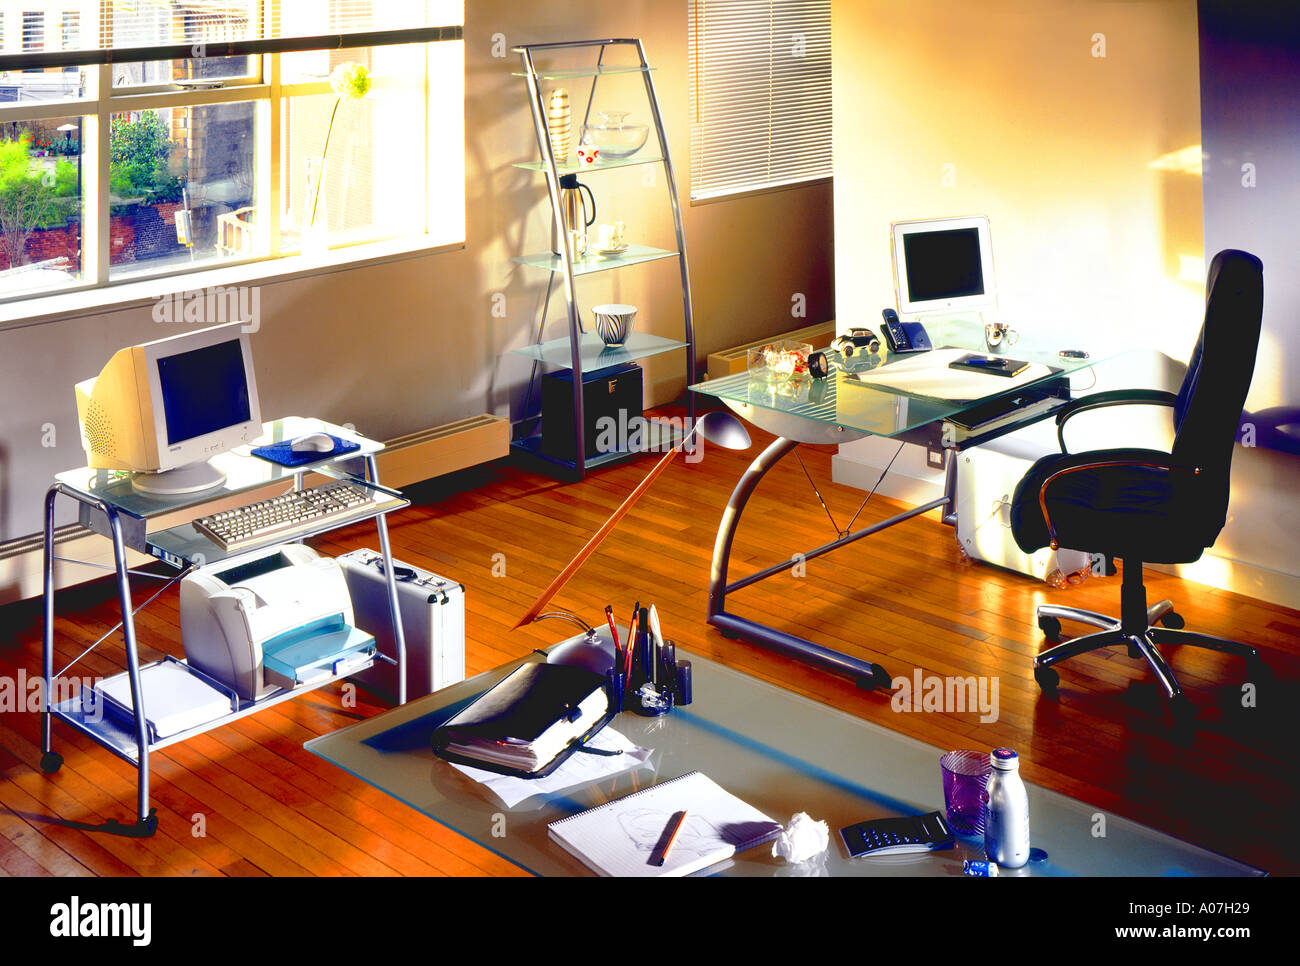 Stuhl, Schreibtisch, Teppich, Architektur, Business, Horizontal, im Haus, Büro, In einer Reihe, ordentlich, Tag, beleuchtet, Schaufenster-Innenräume, Stockfoto